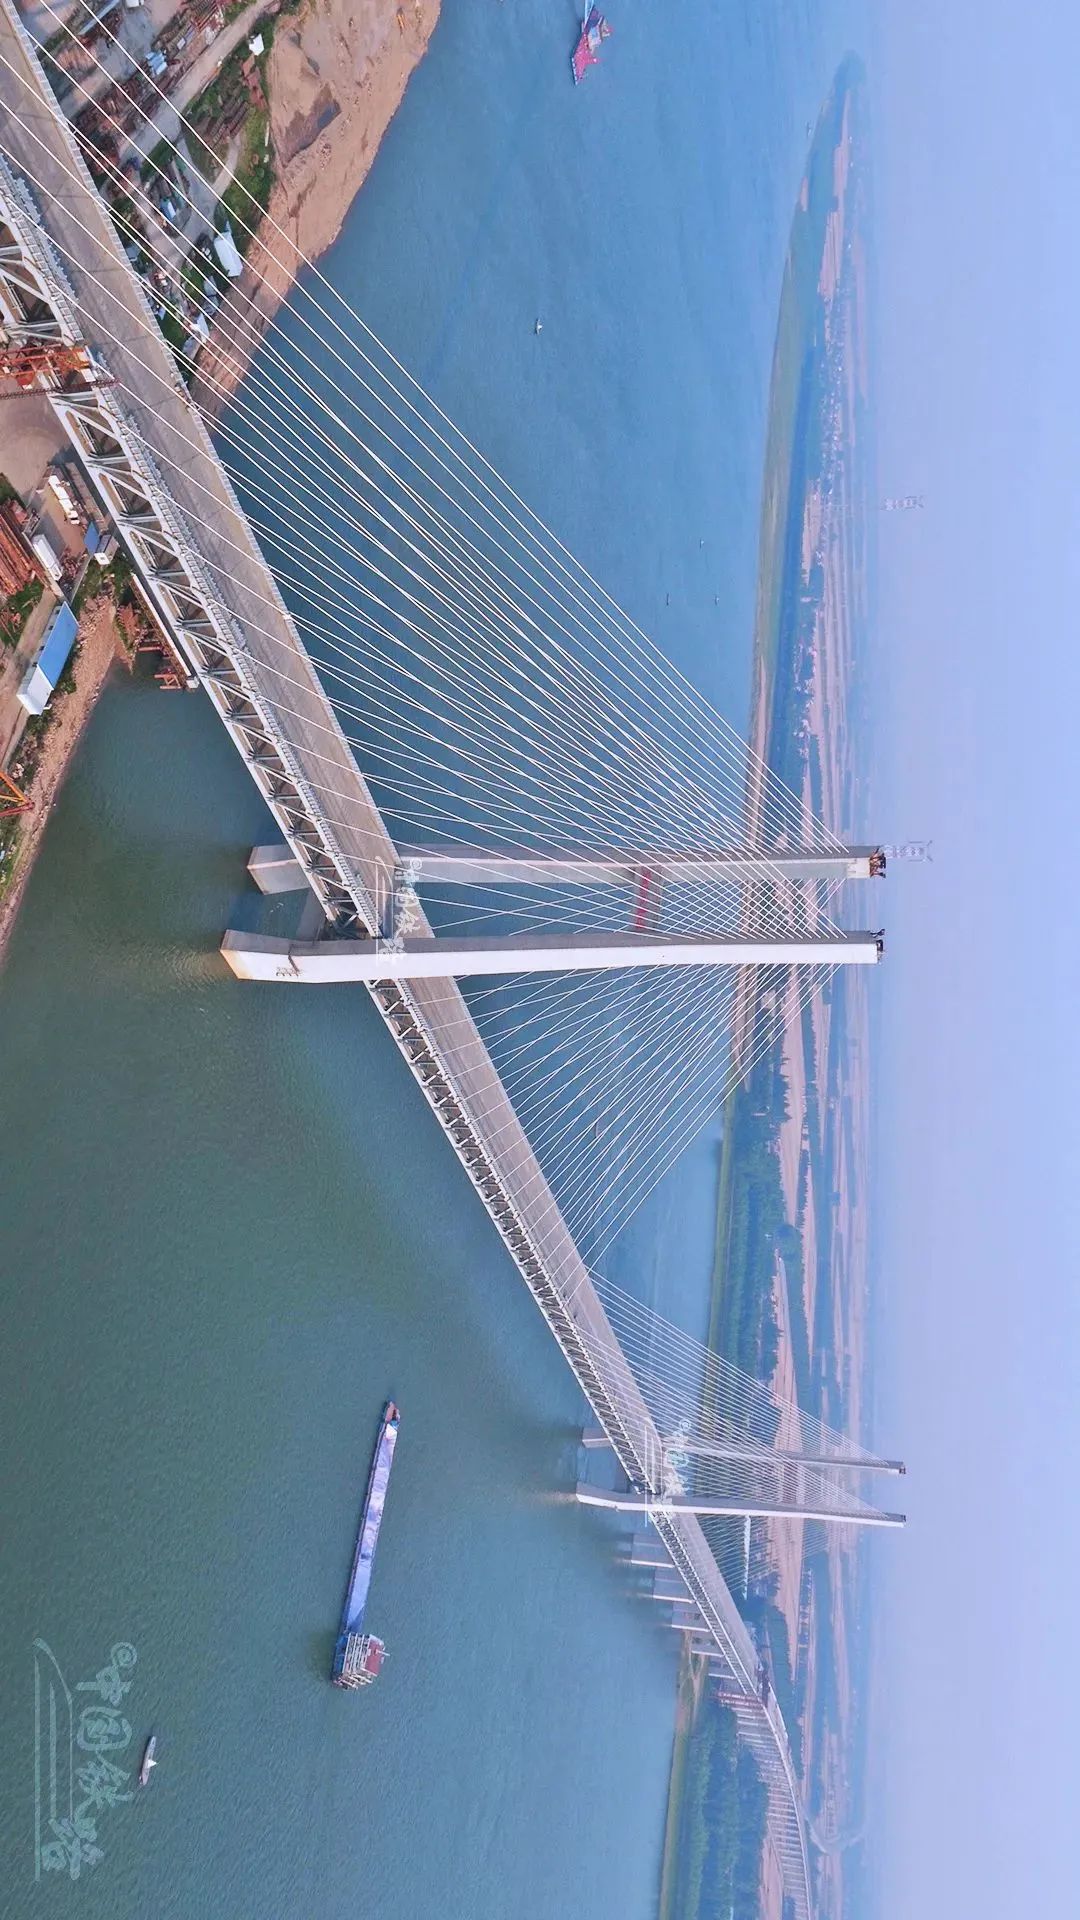 新中国在长江天堑上修建的第一座公铁两用桥,被称为"万里长江第一桥"